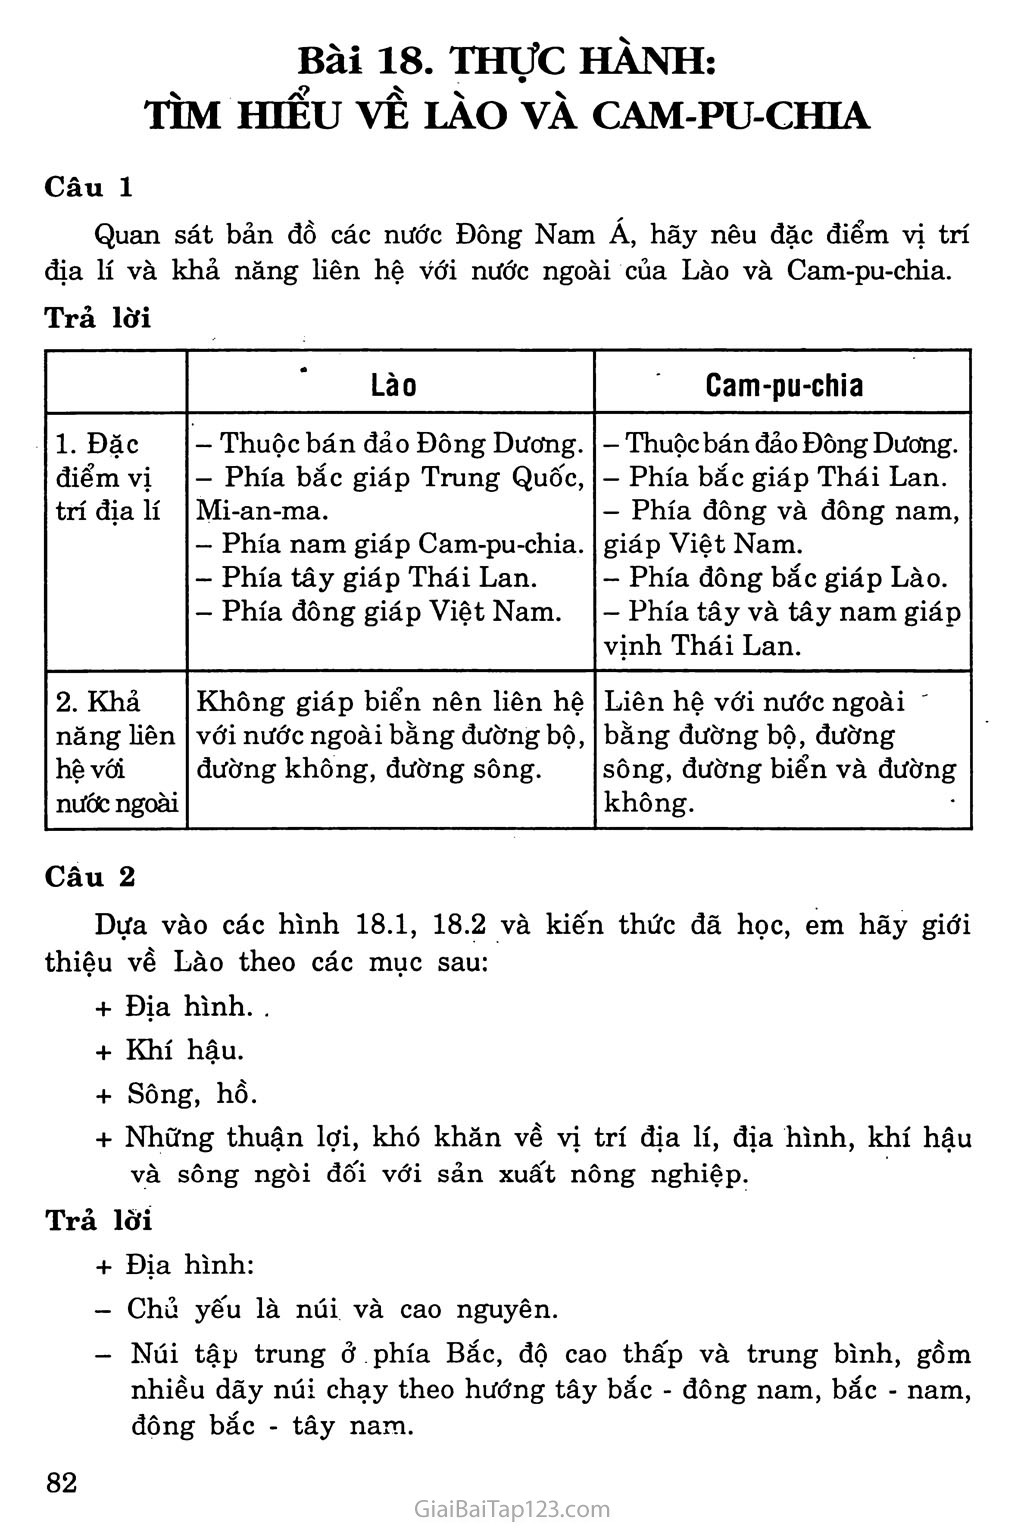 Bài 18: Thực hành: Tìm hiểu Lào và Cam-pu-chia trang 1